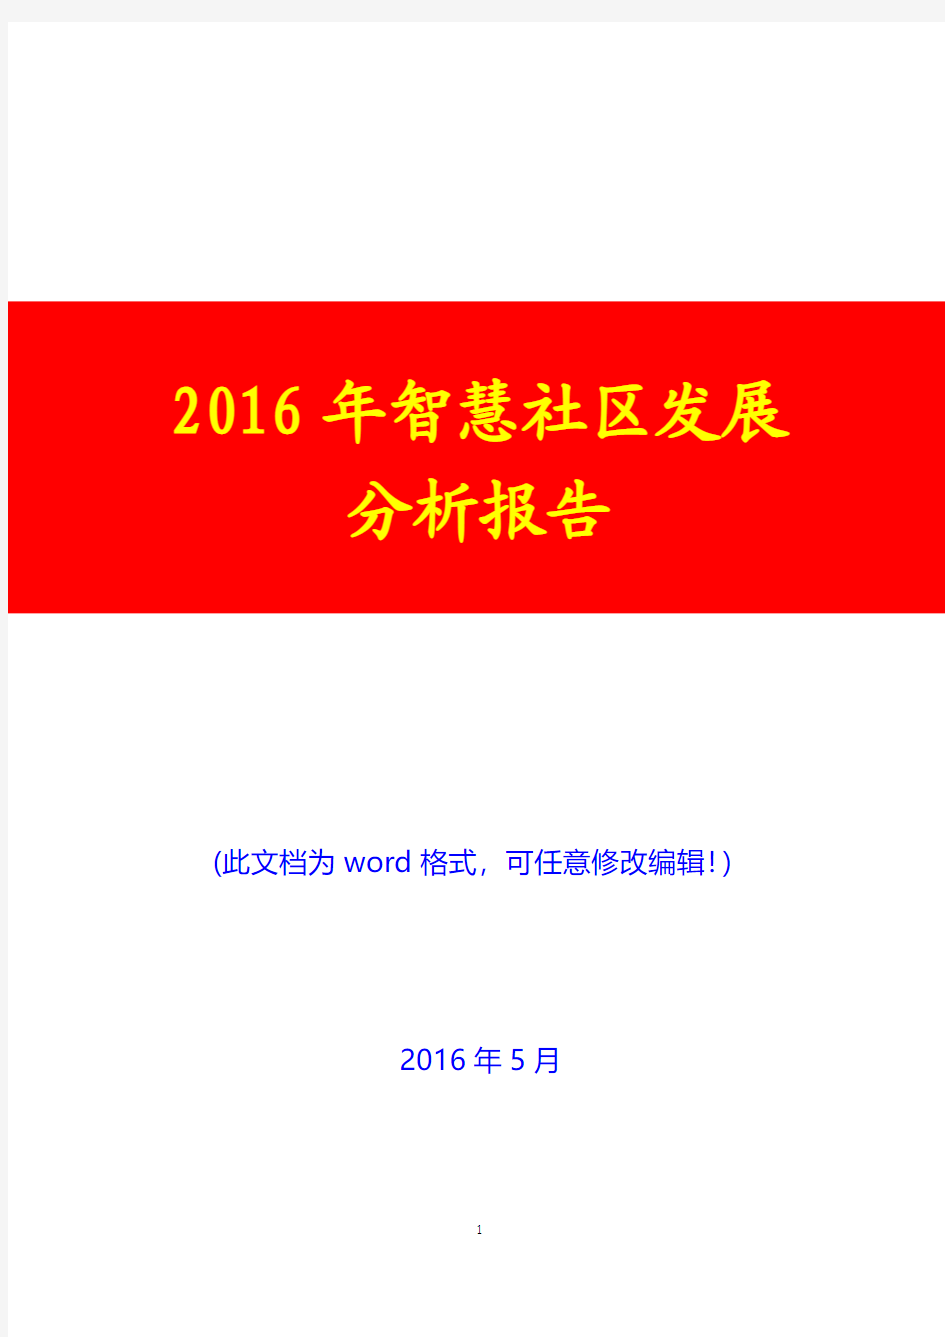 2016年智慧社区发展分析报告(经典版)